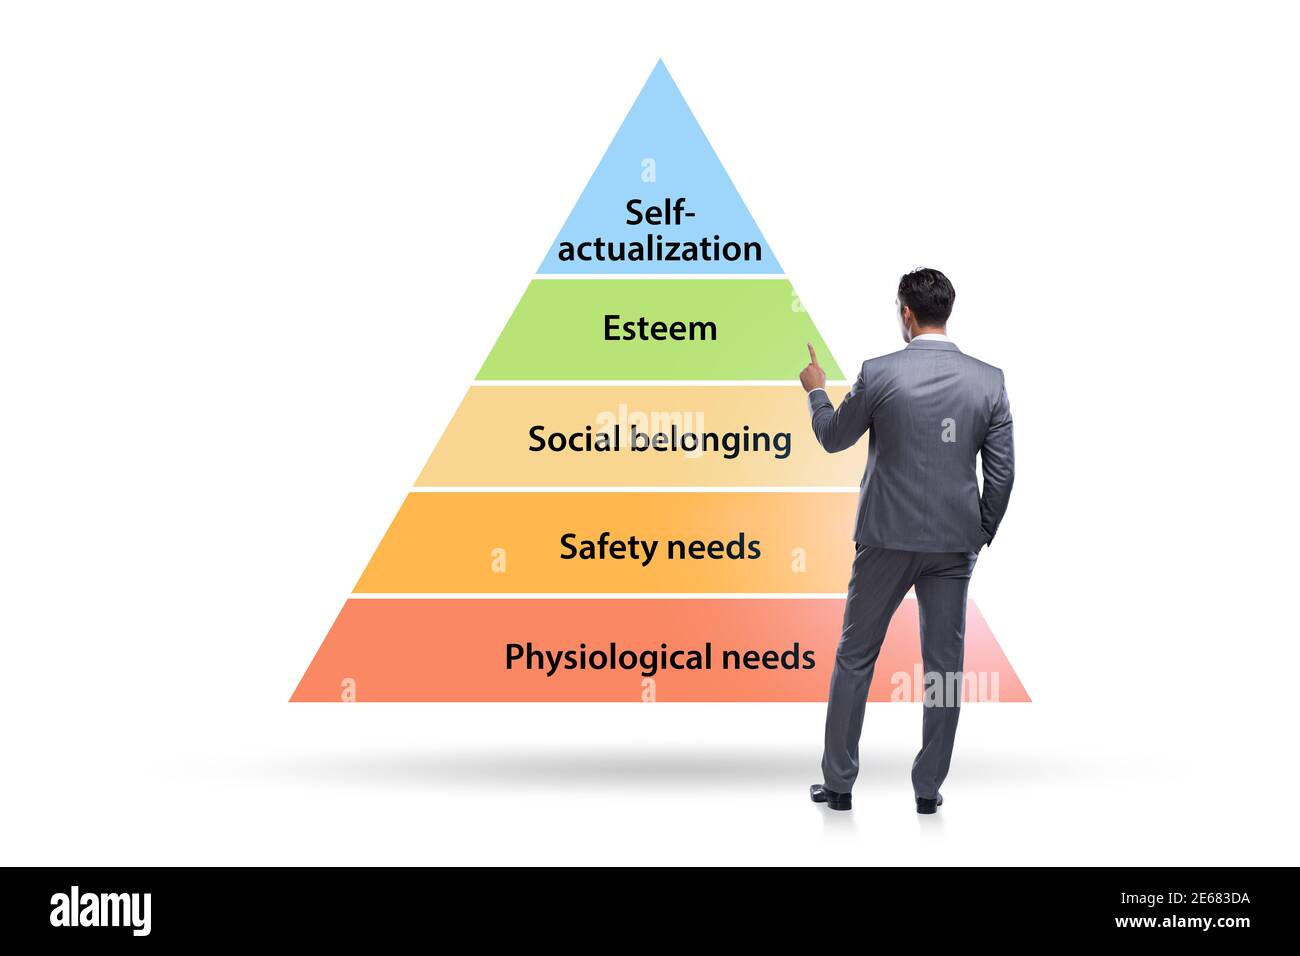 Concept de hiérarchie des besoins Maslow avec l'homme d'affaires Banque D'Images